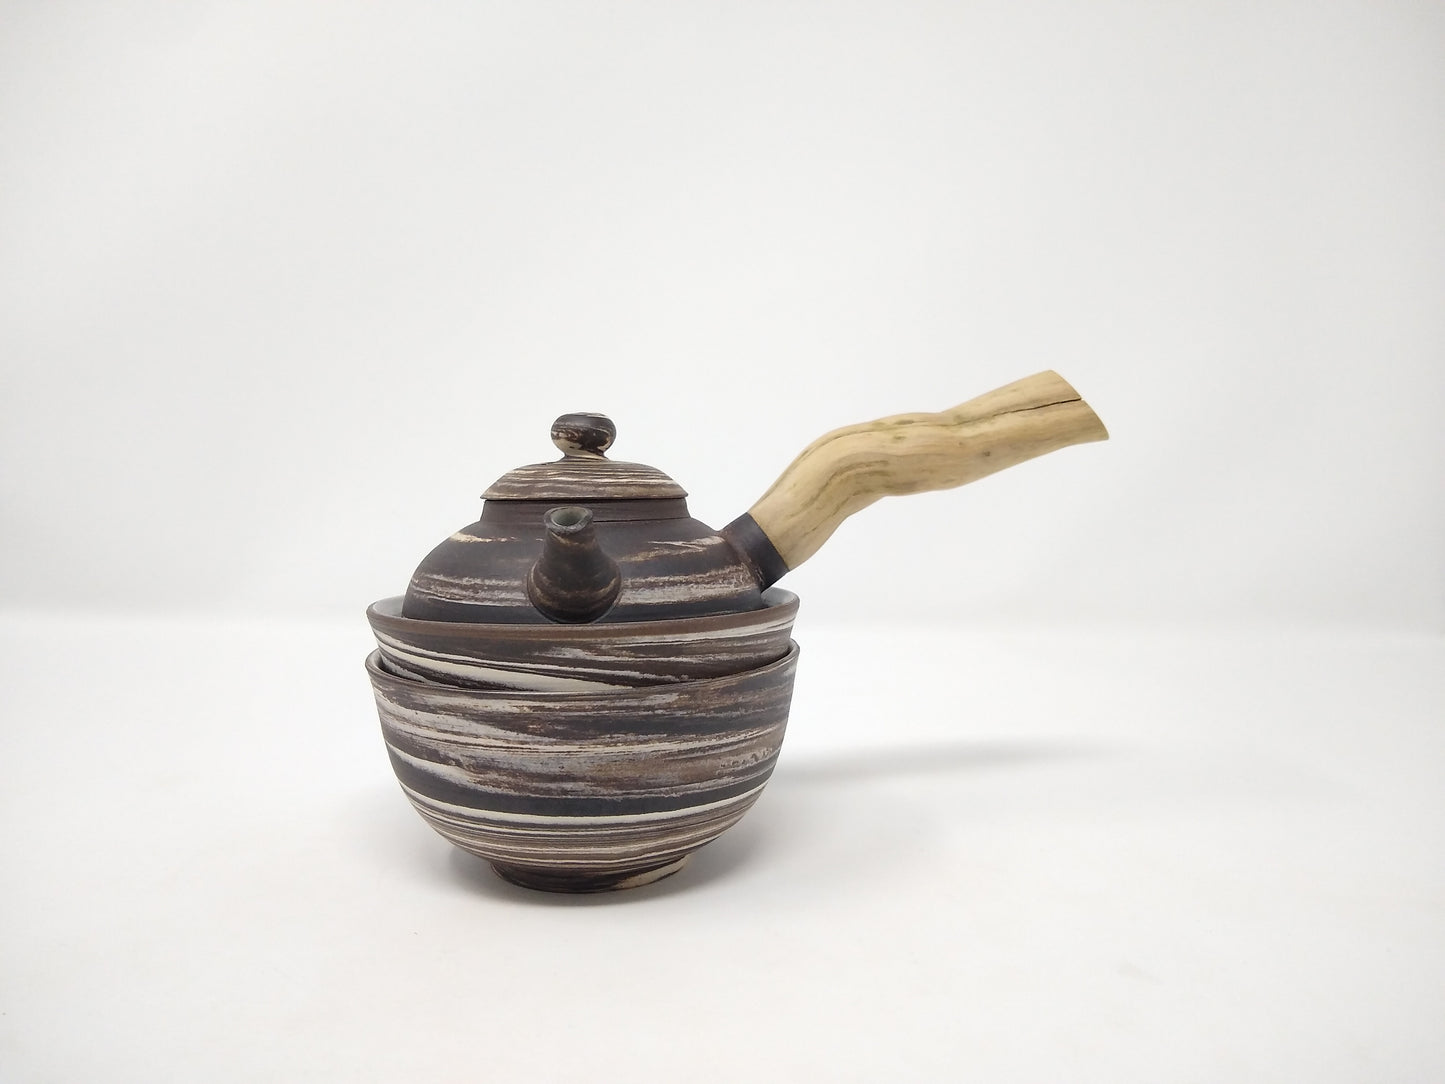 200ml "Nerikomi" Kyusu with two matching 200ml tea bowls